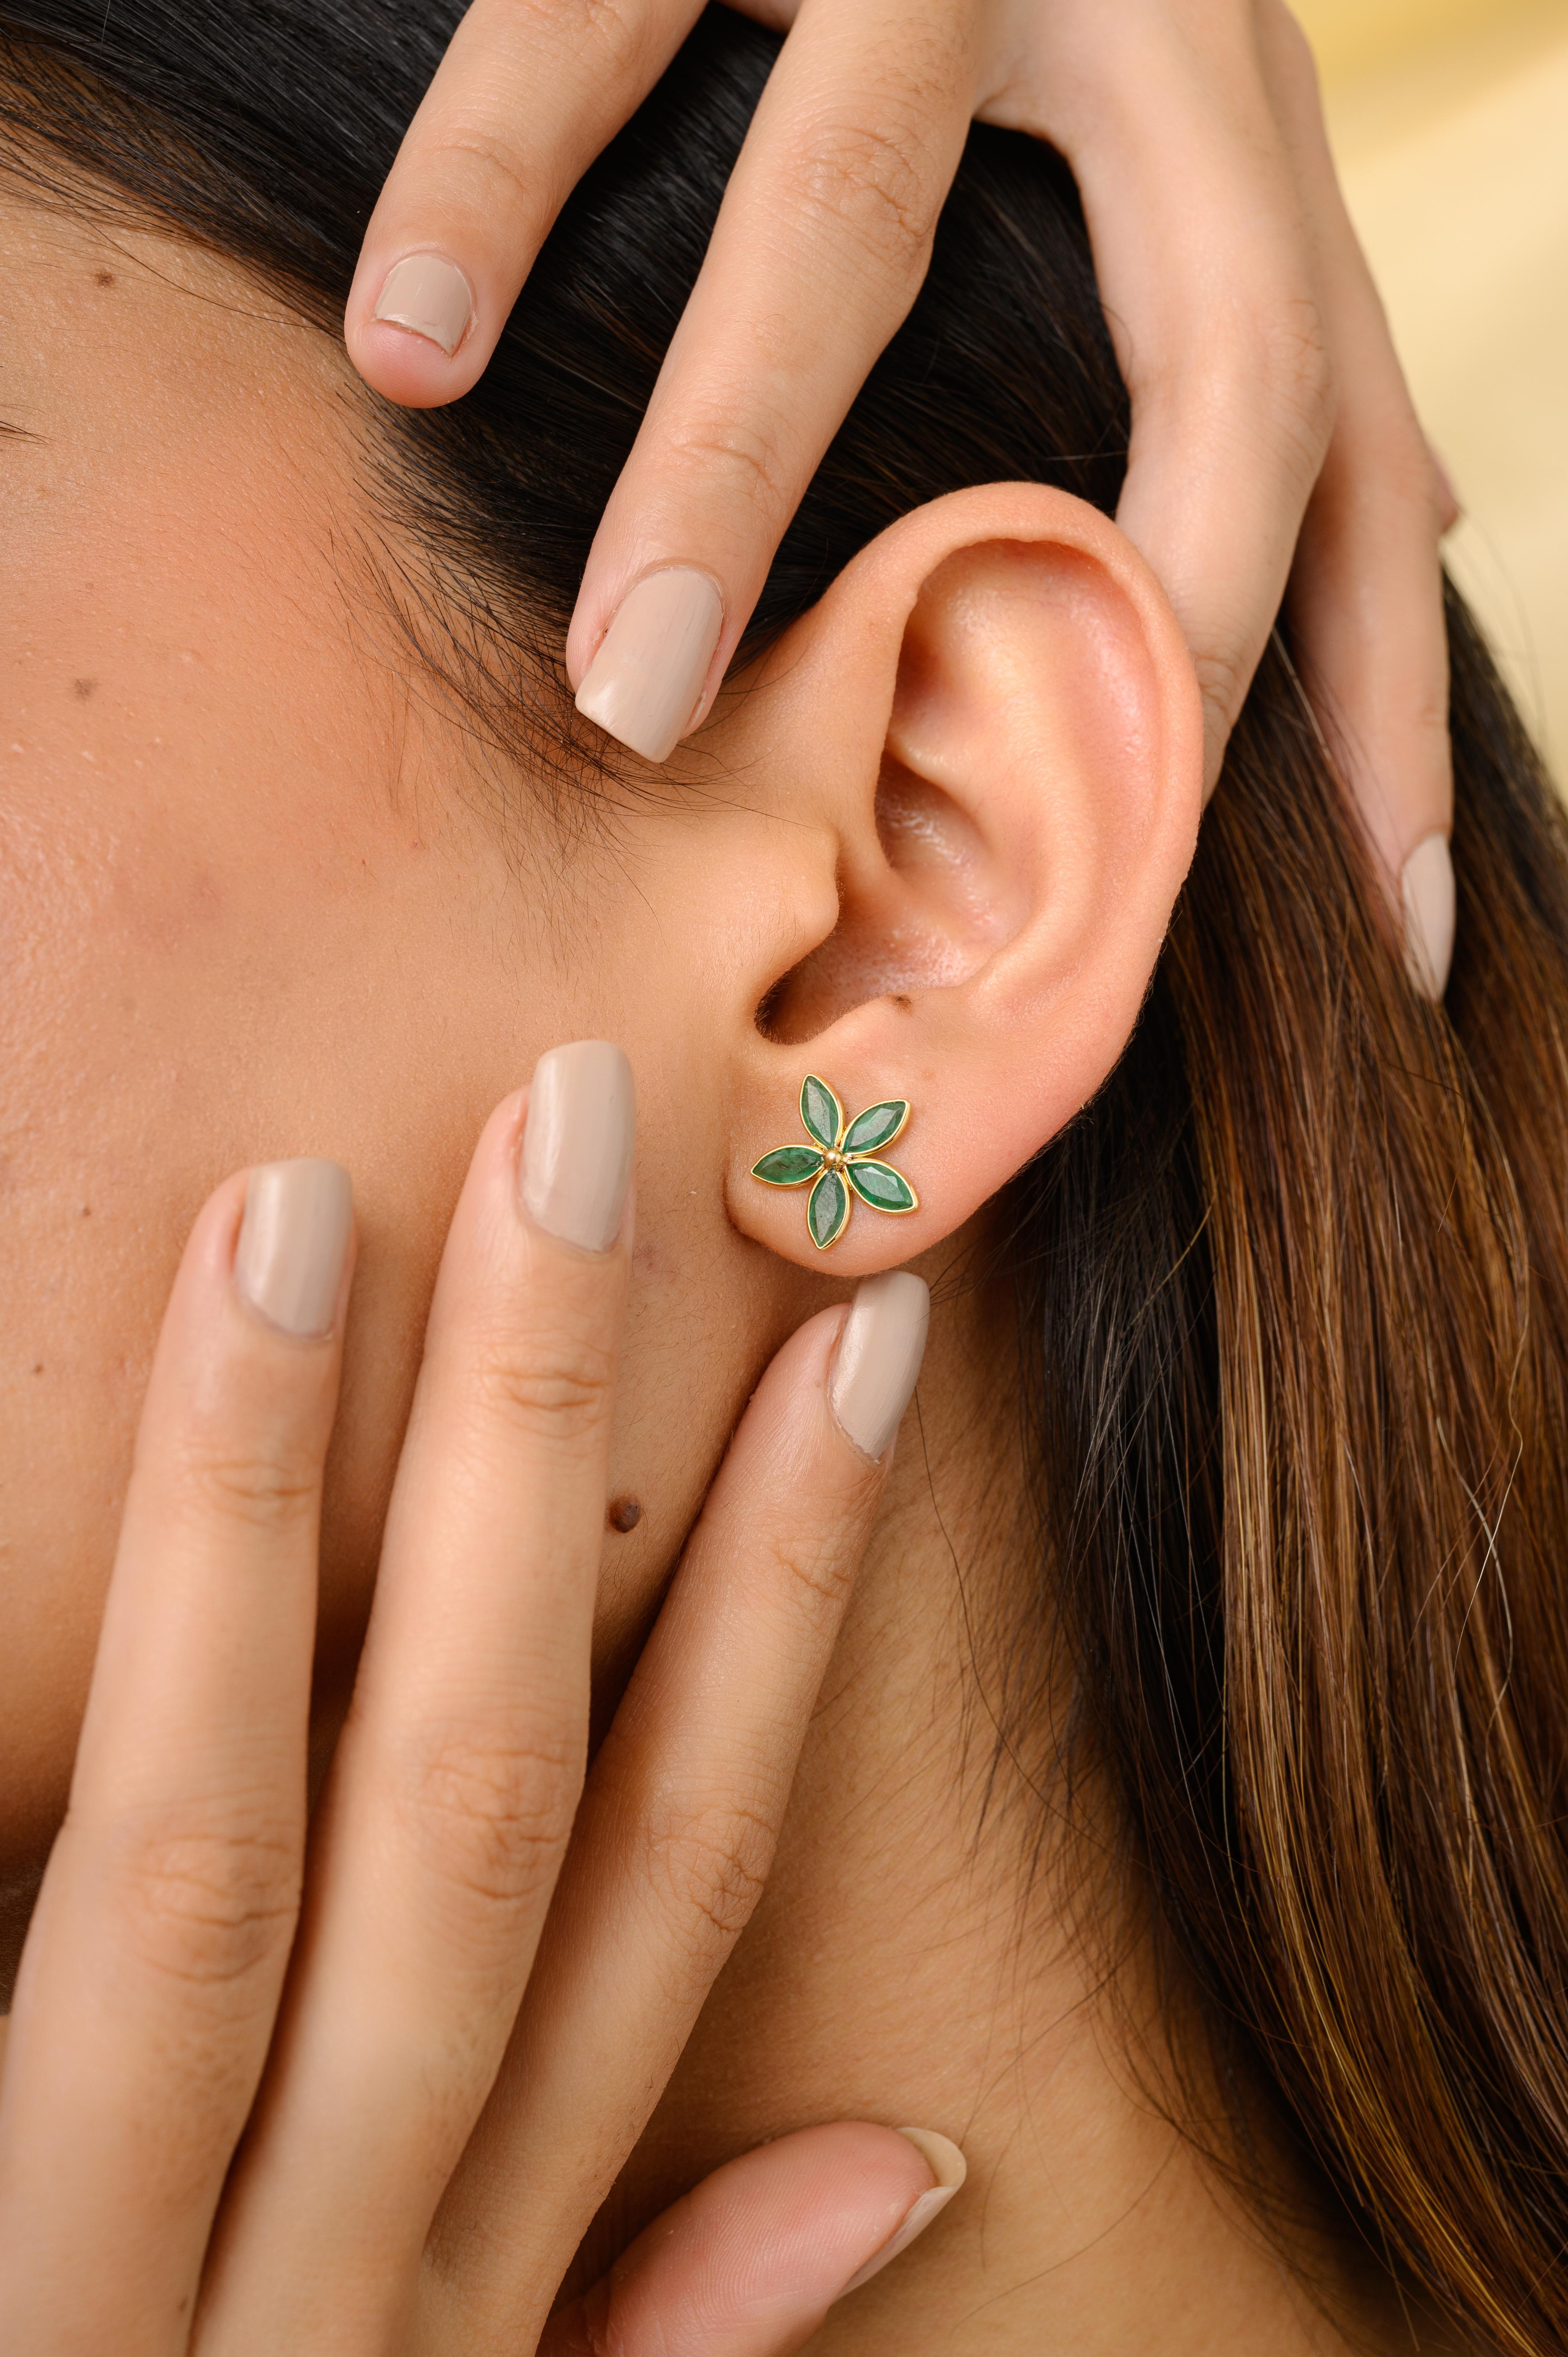 Les boucles d'oreilles Emerald Flower Everyday en or 18 carats vous permettront d'affirmer votre style. Vous aurez besoin de boucles d'oreilles cloutées pour affirmer votre look. Ces boucles d'oreilles créent un look étincelant et luxueux avec une